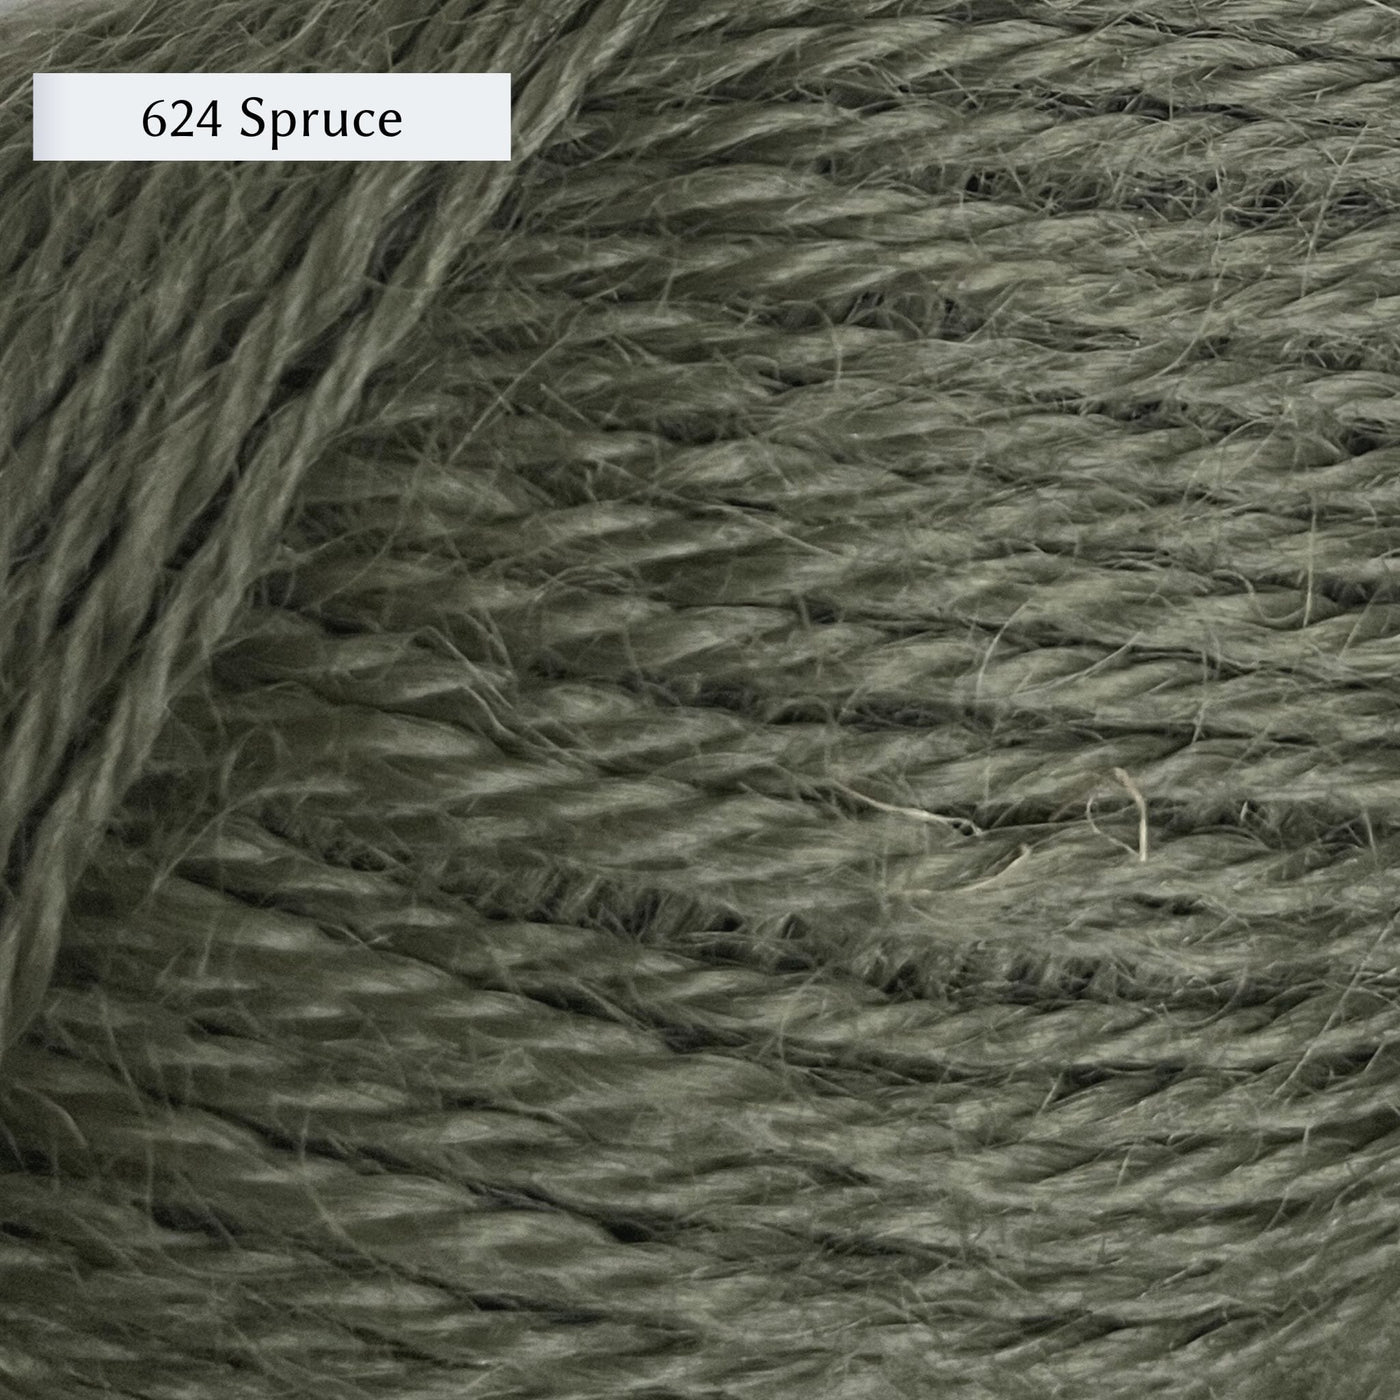 Wensleydale Longwool Sheep Shop 4ply yarn, a fingering weight yarn, in 624 Spruce, a dusty grey-green